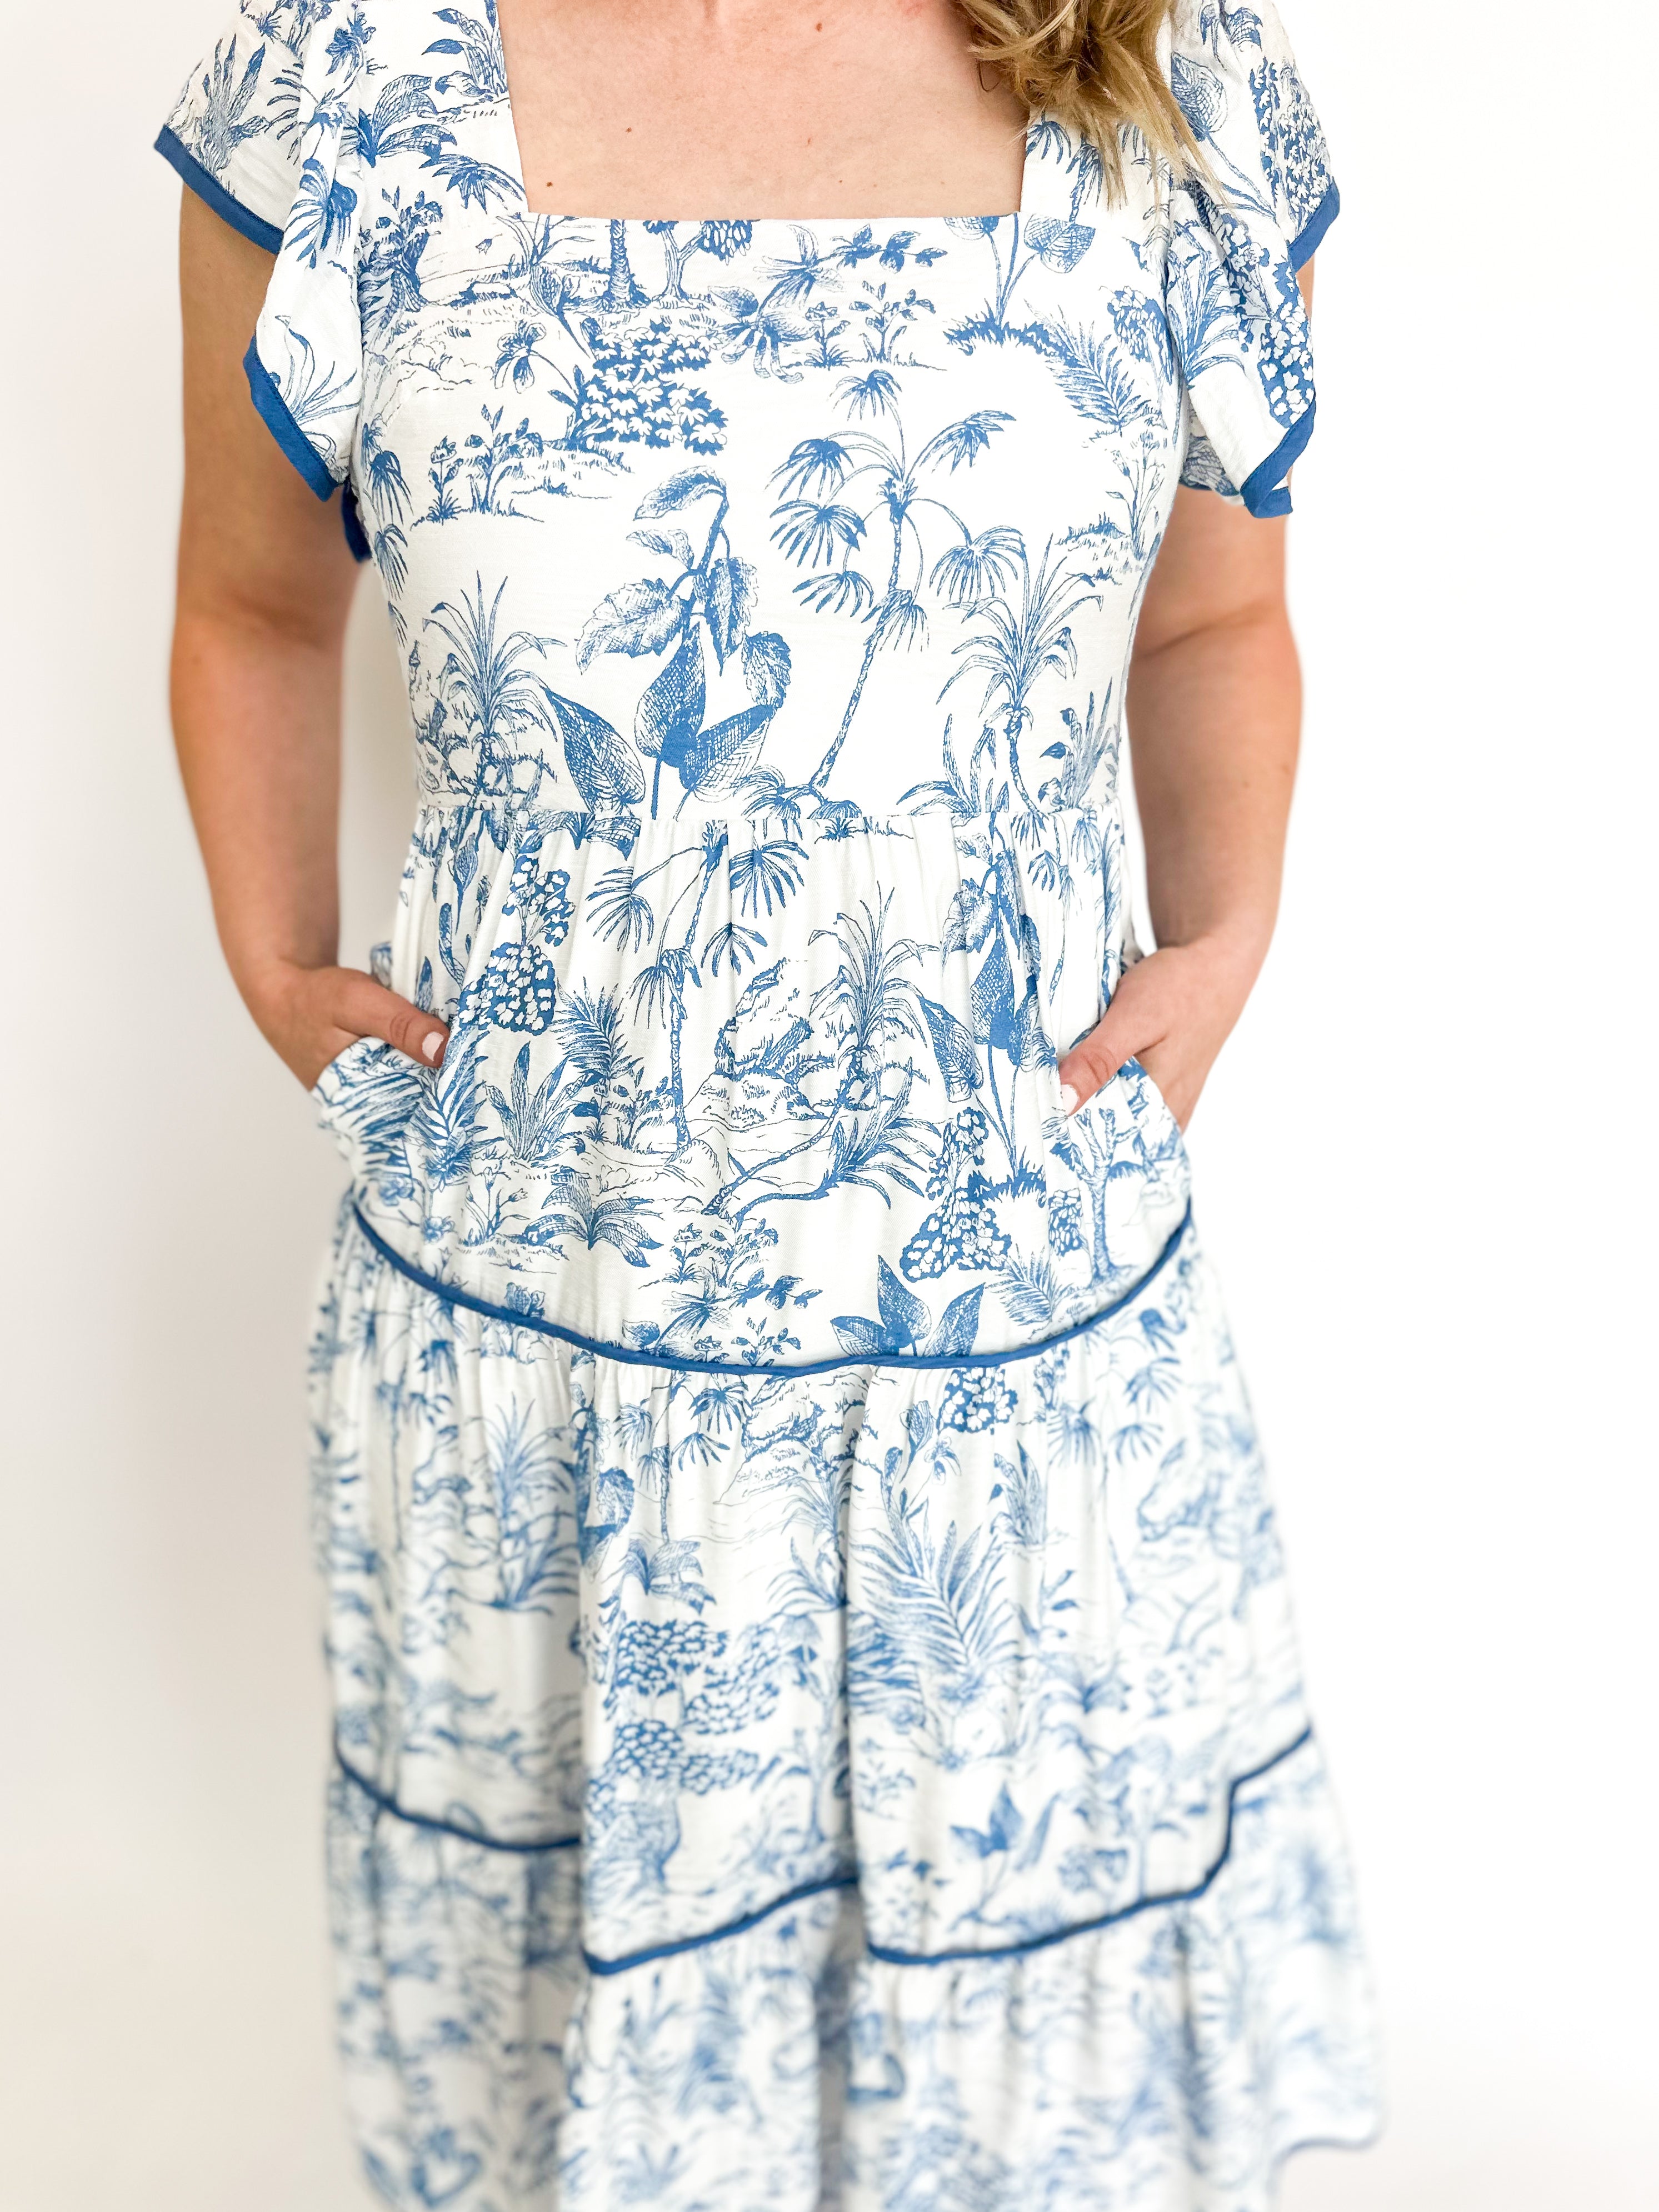 Toile Magic Midi Dress - Blue-500 Midi-ENTRO-July & June Women's Fashion Boutique Located in San Antonio, Texas